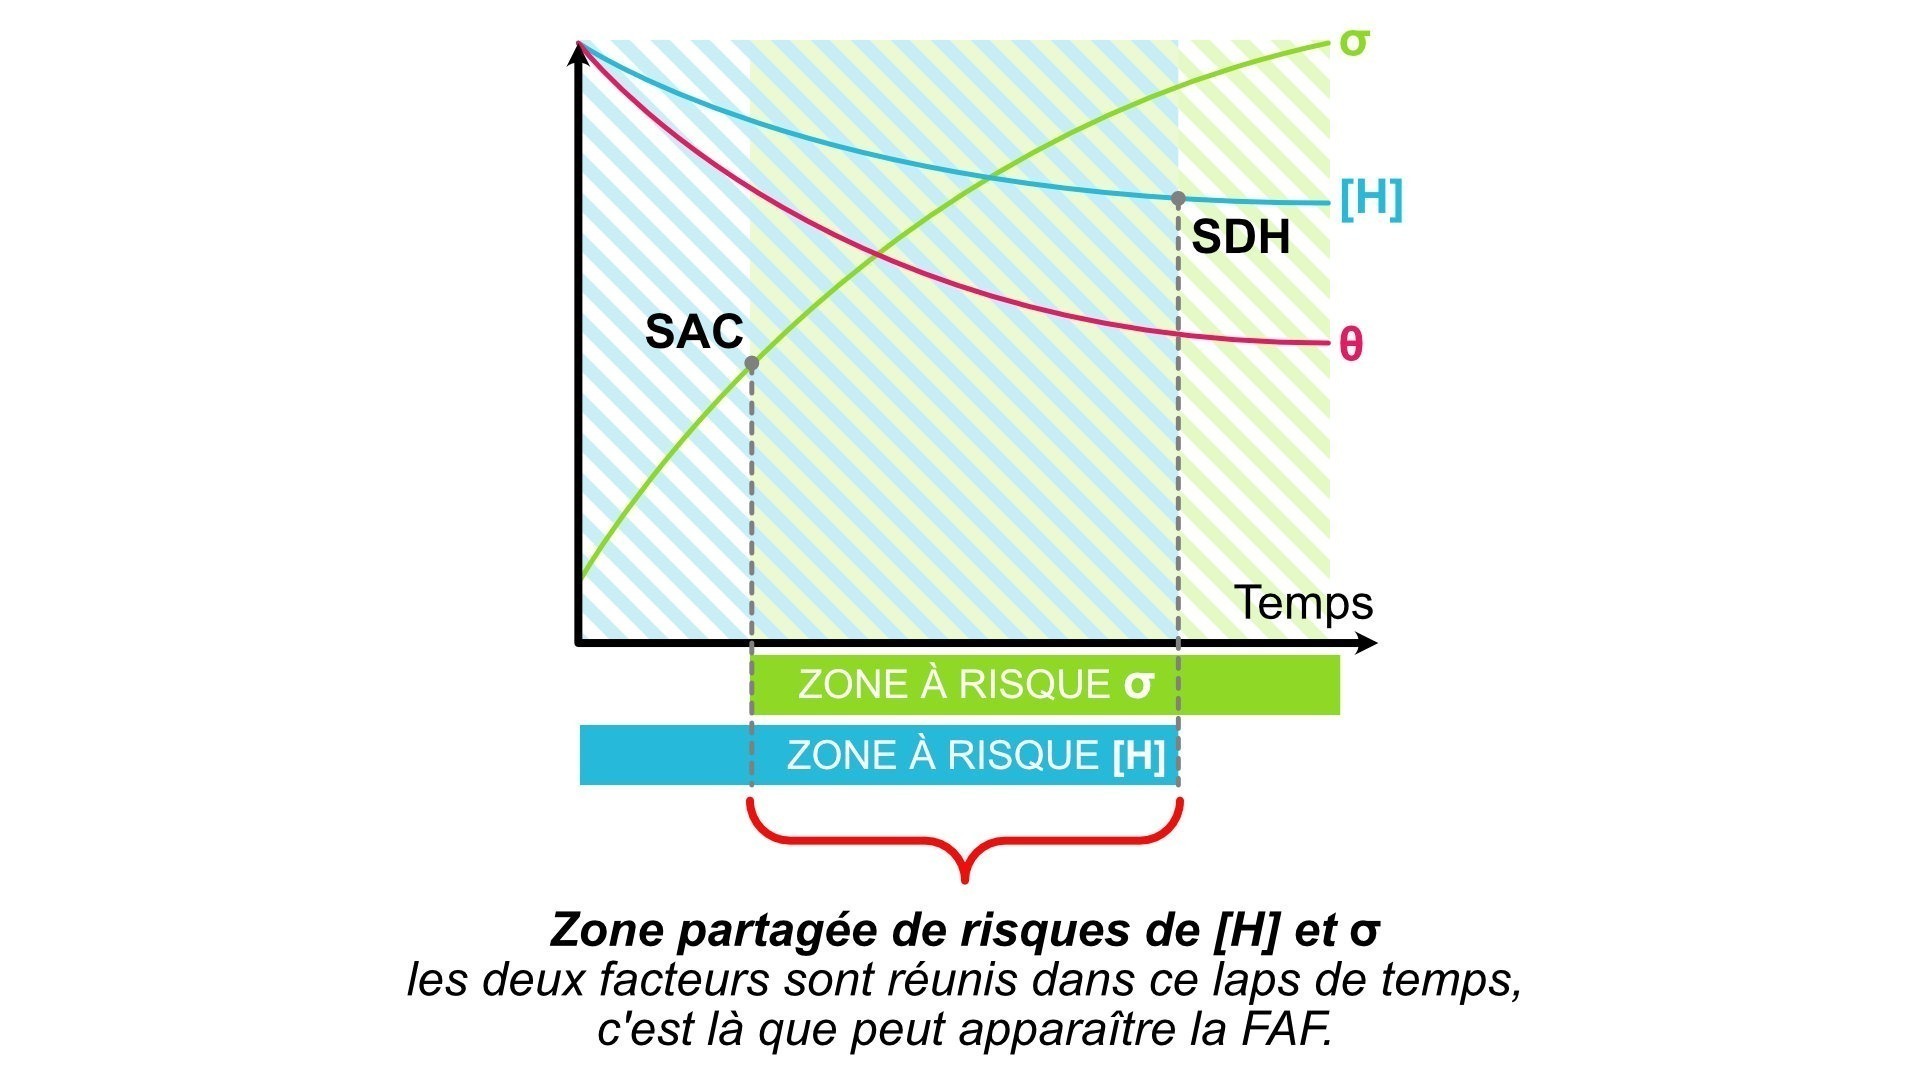 FAF - SAC Vs SDH - Zone de risques partagés